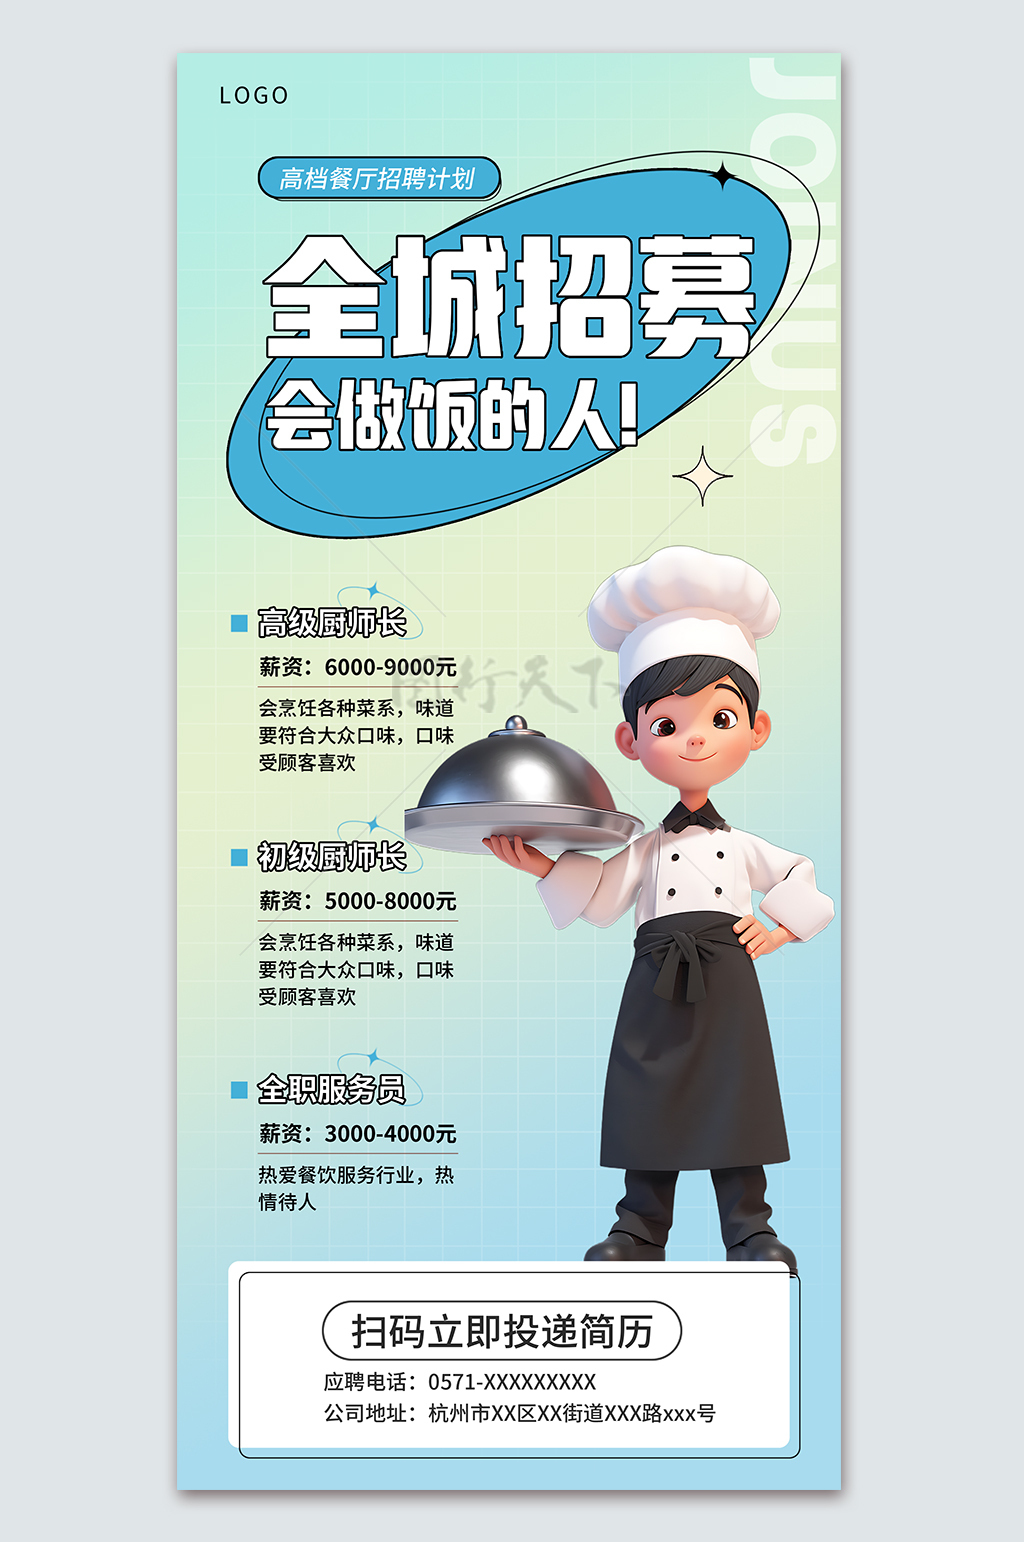 全城招聘会做饭的人饭店招人宣传海报